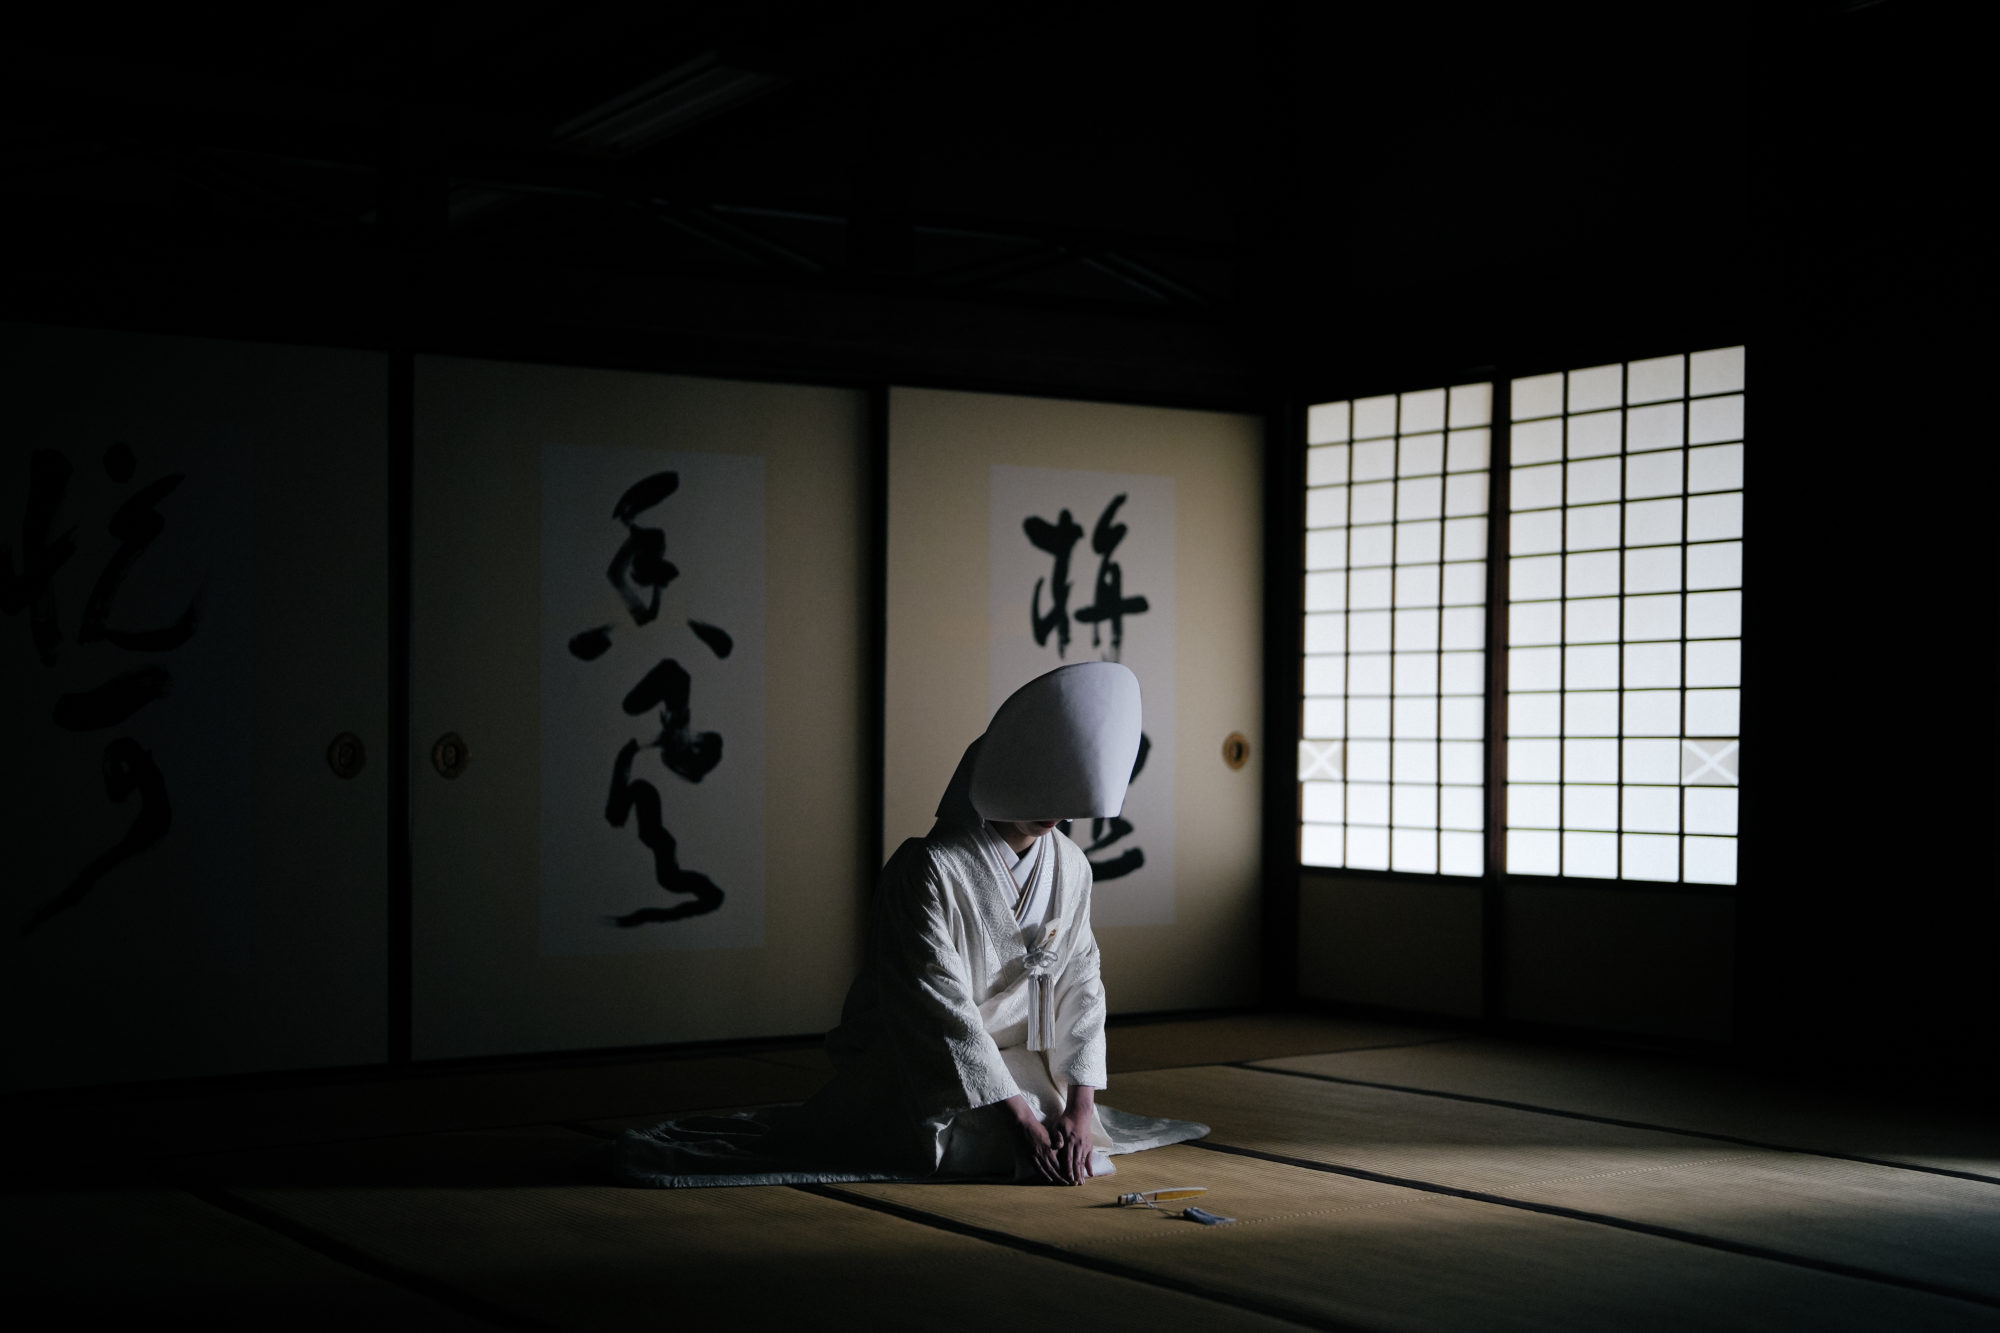 「立本寺」室内で正座をする、白無垢を着た新婦のウェディングフォト